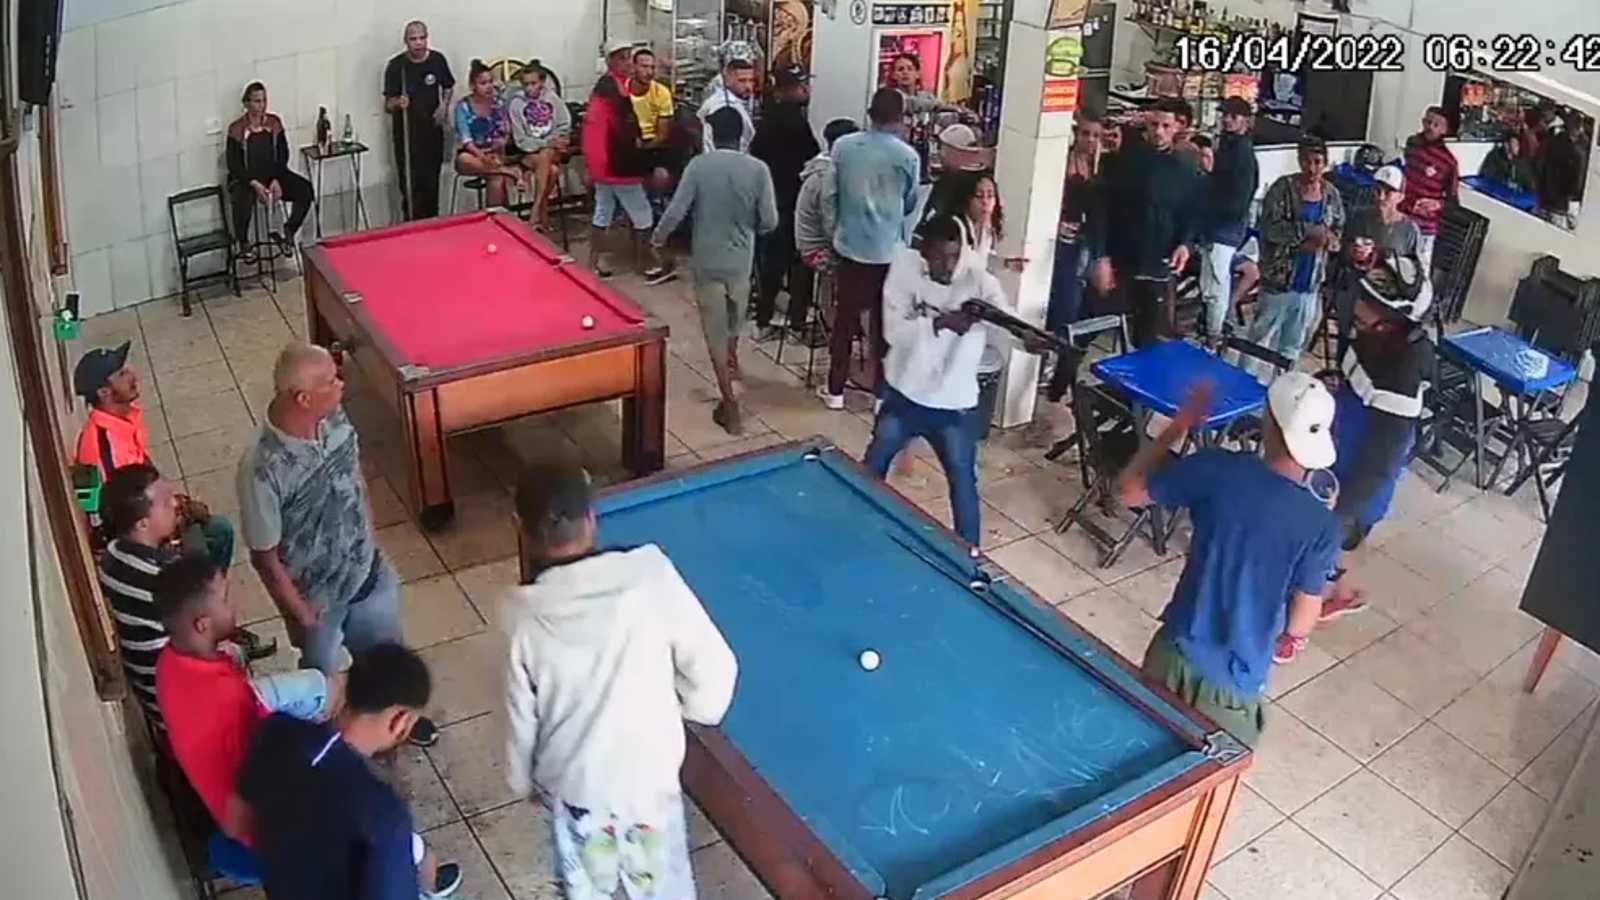 VÍDEO - Homens perdem jogo de sinuca em bar, voltam armados e provocam  enorme tragédia